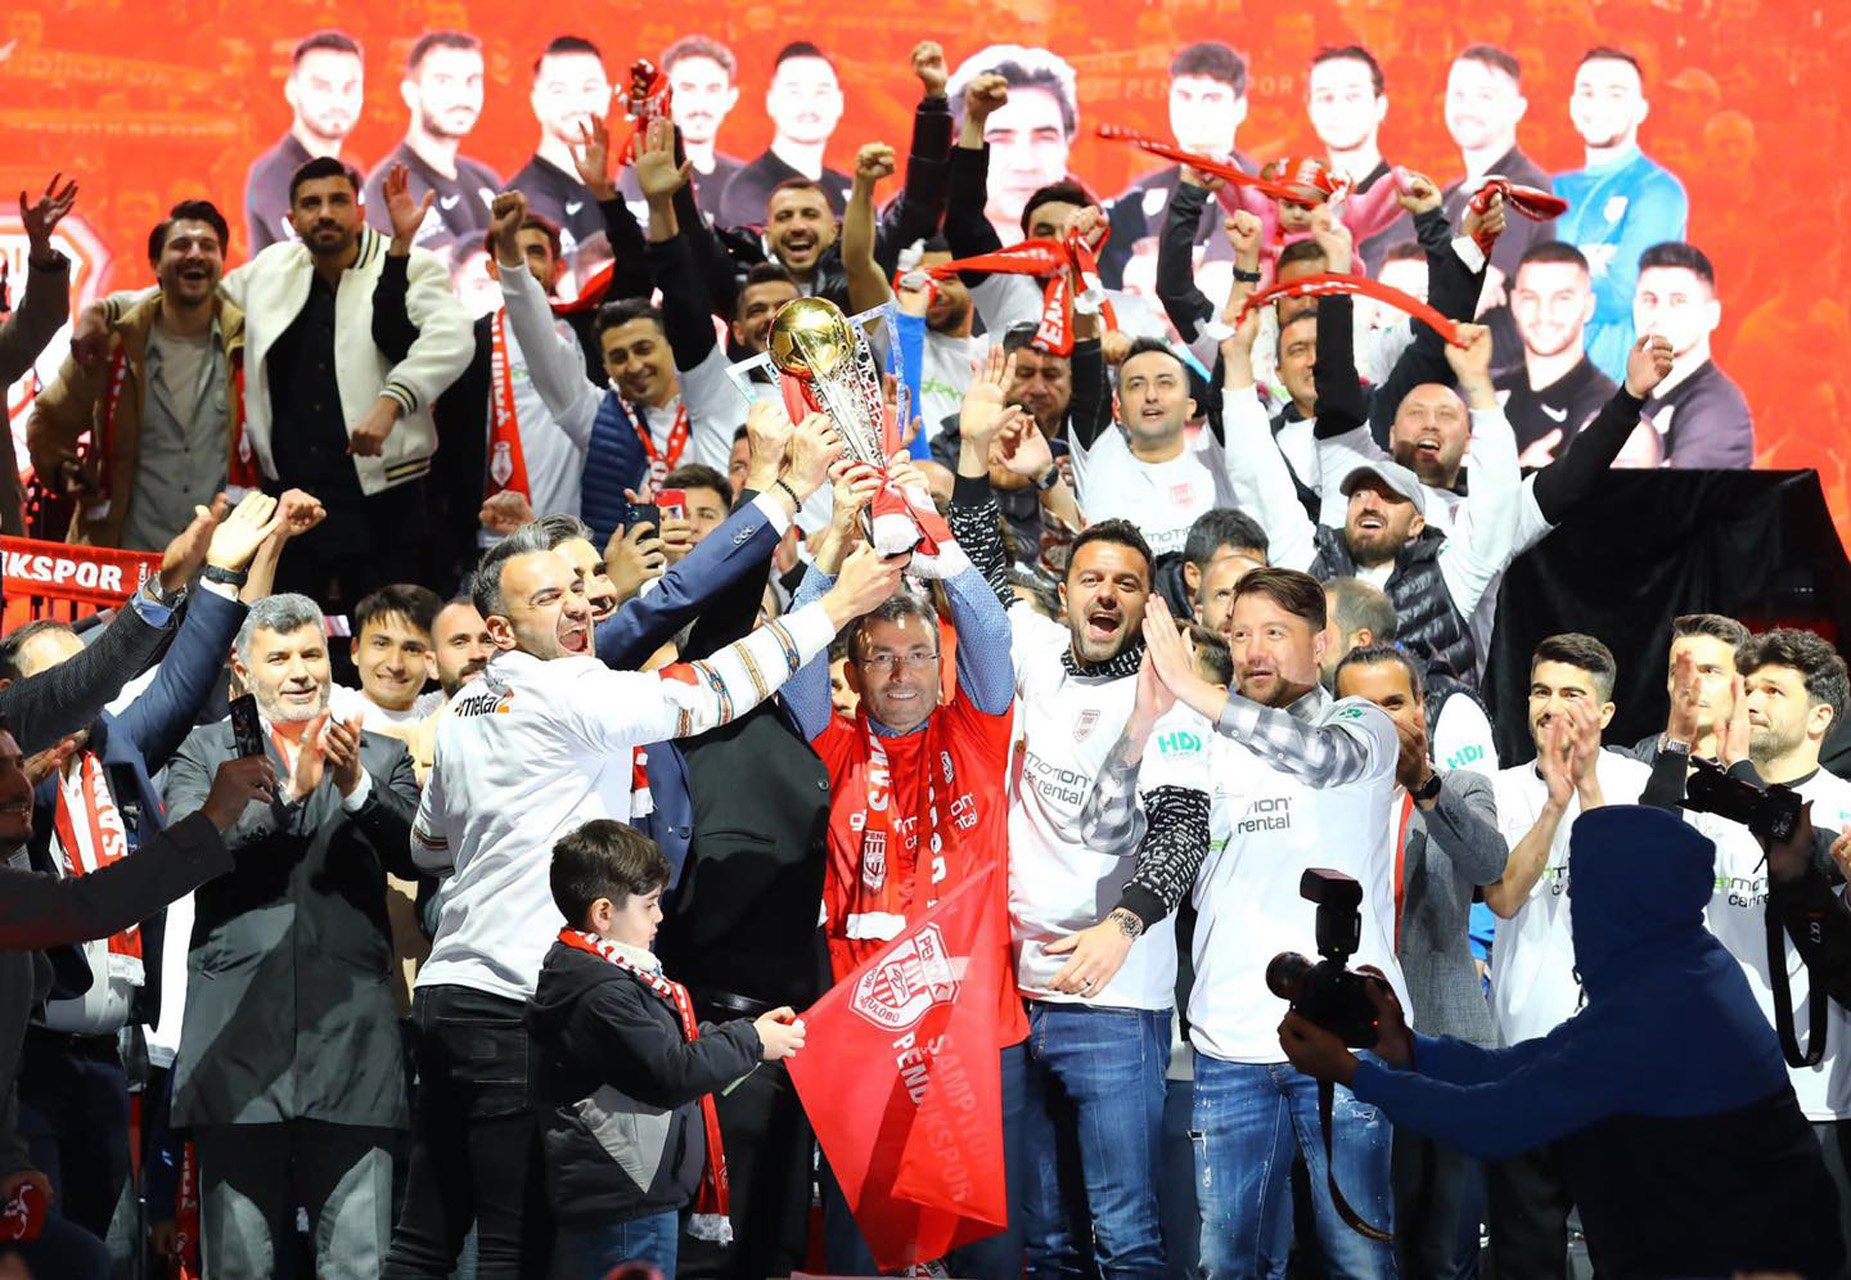 Pendikspor şampiyonluğu coşkuyla kutladı! Belediye Başkanı Ahmet Cin taraftarların sevincine ortak oldu! Mutlu ve gururluyuz